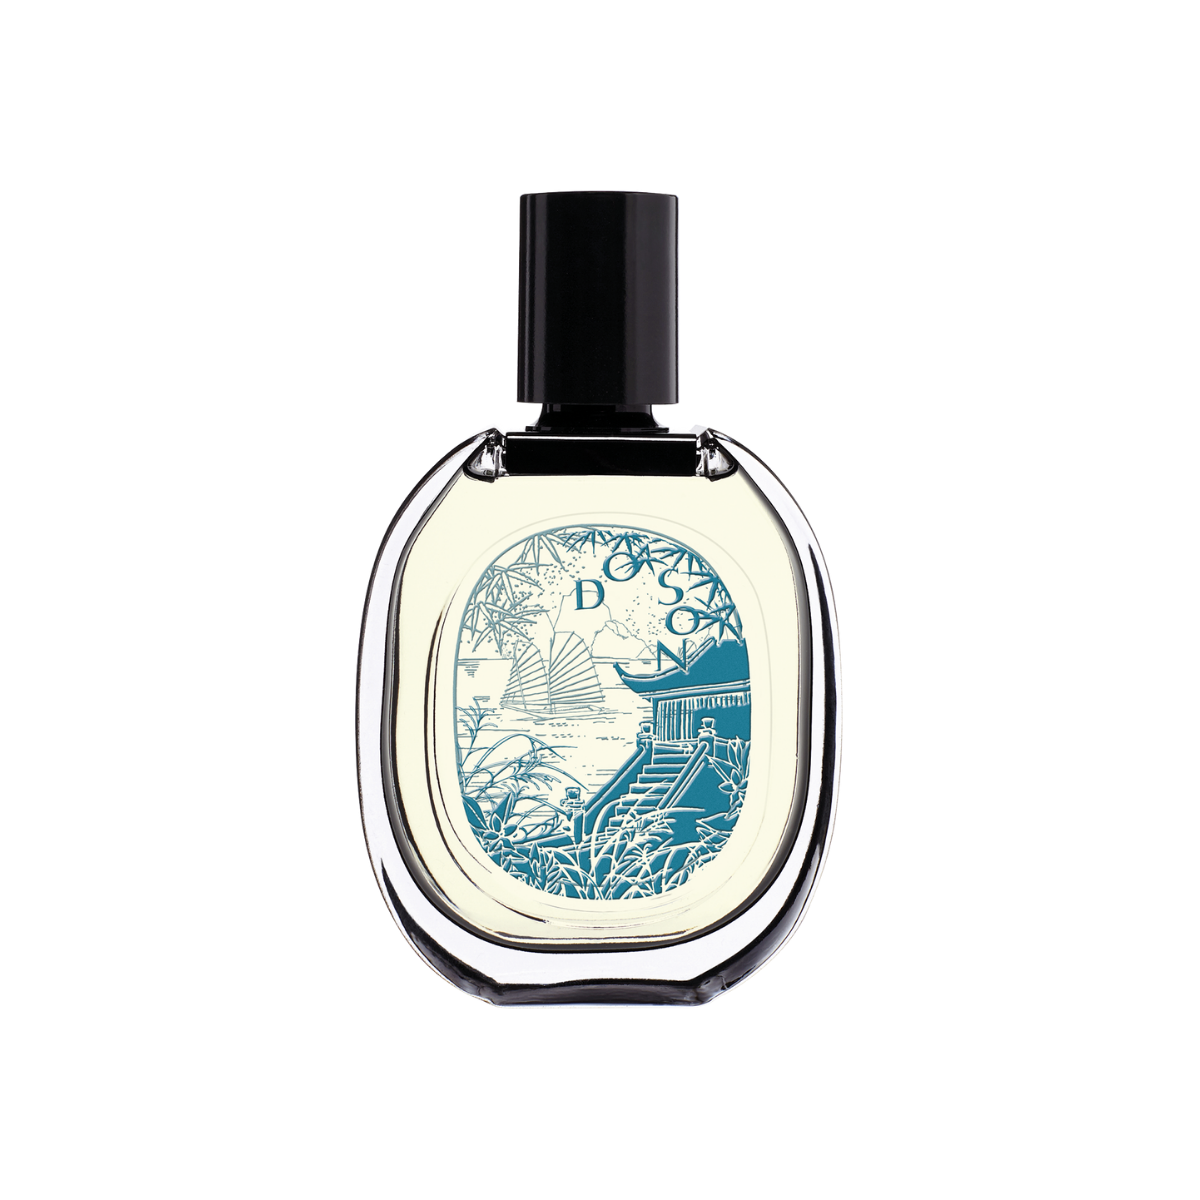 Diptyque Do Son Eau De Parfum Limited Edition 75ml